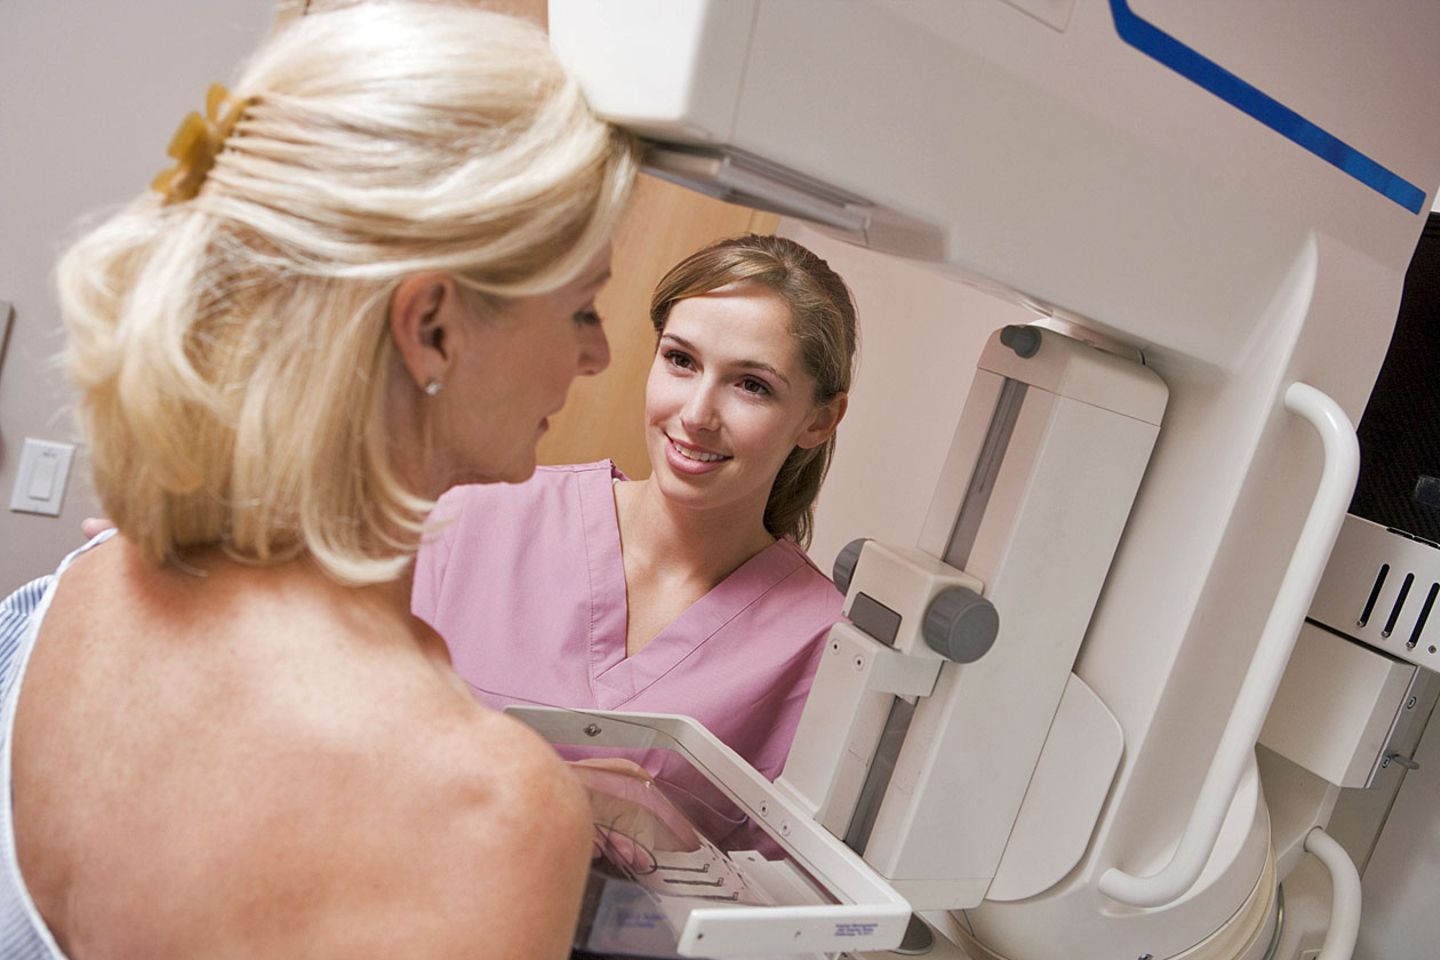 Fast jede dritte Frau glaubt, dass schon die Teilnahme am Mammografie-Screening verhindere, dass sie an Brustkrebs erkrankt.